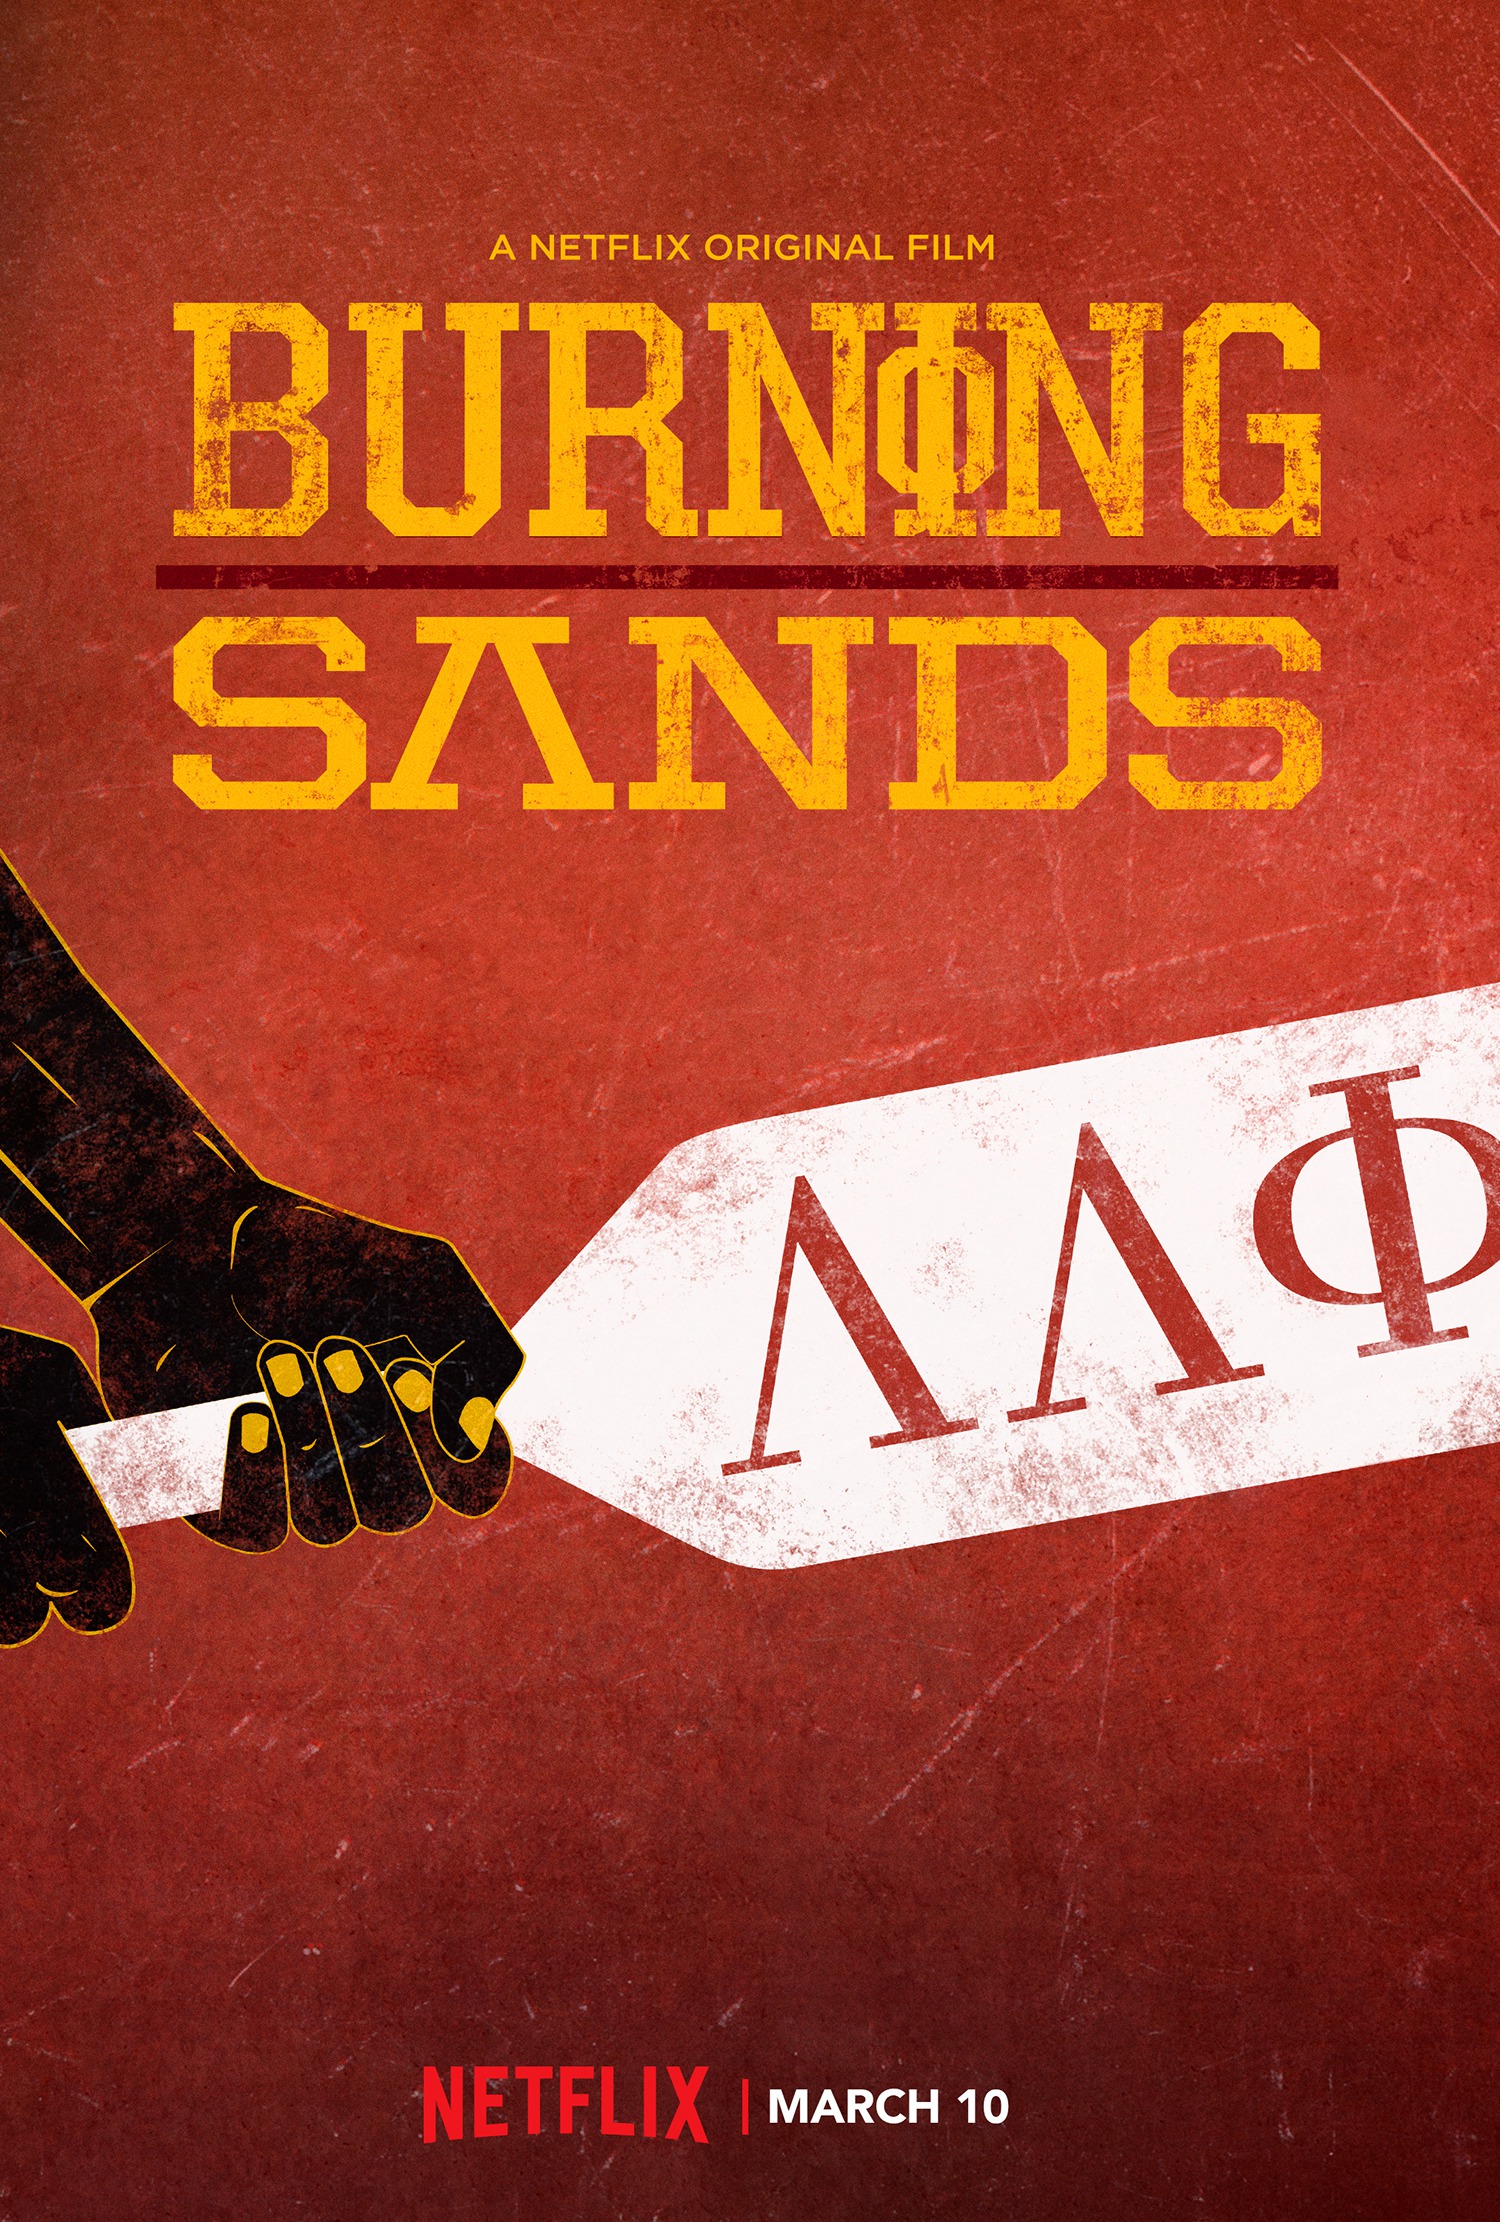 Mega Sized TV Poster Image for Burning Sands 